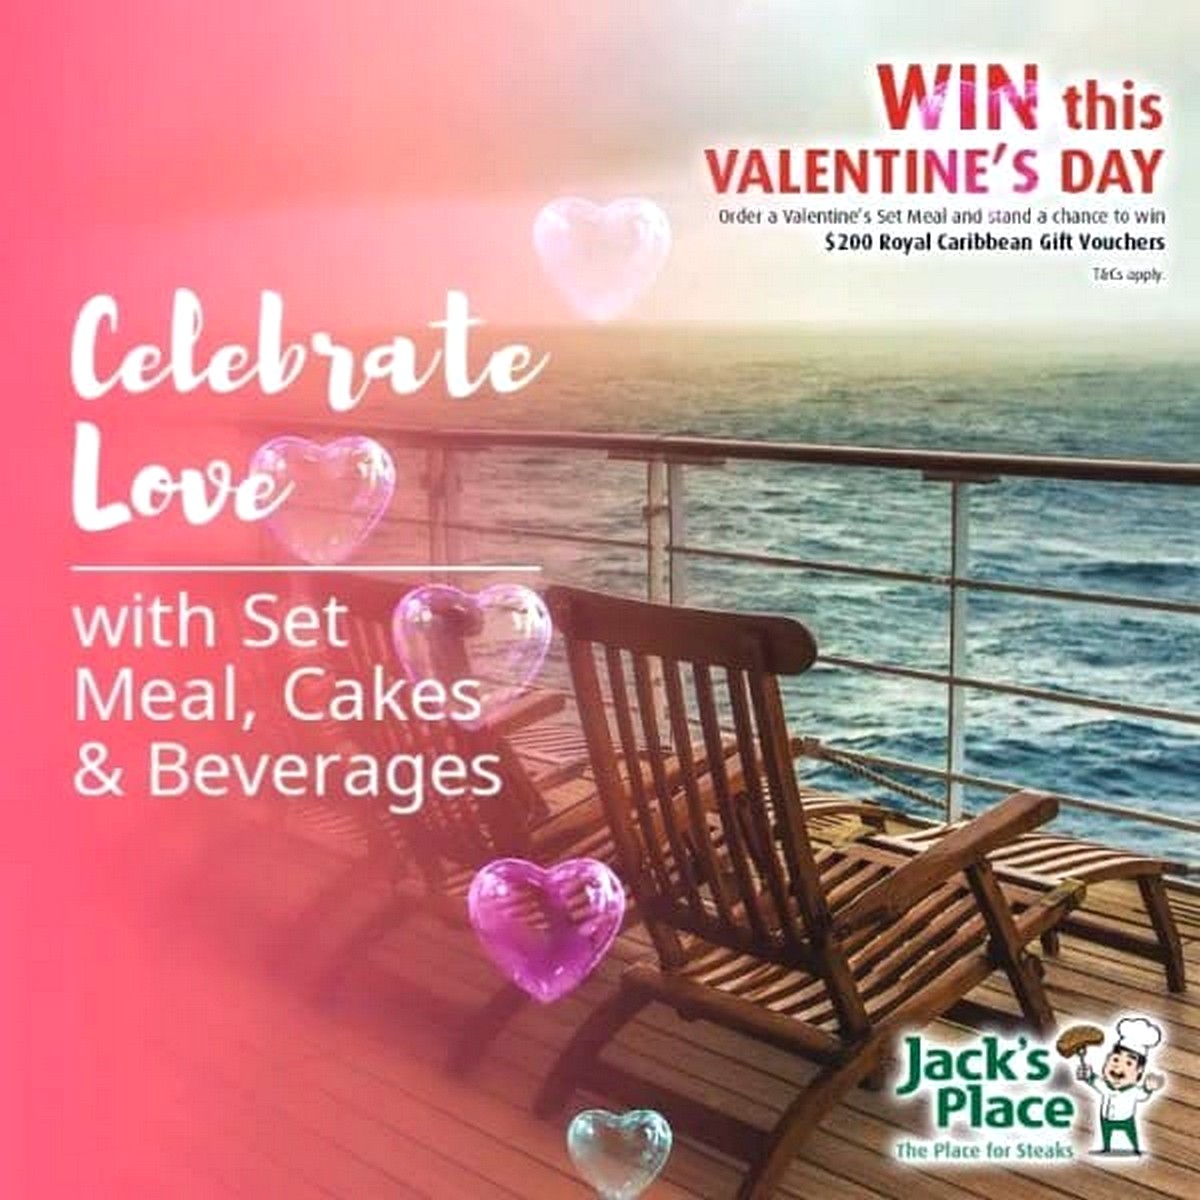 Jacks-Place-Valentine’s-Day-Promotion-1 30 Jan 2020 Onward: Jack's Place Valentine’s Set Meal Promotion